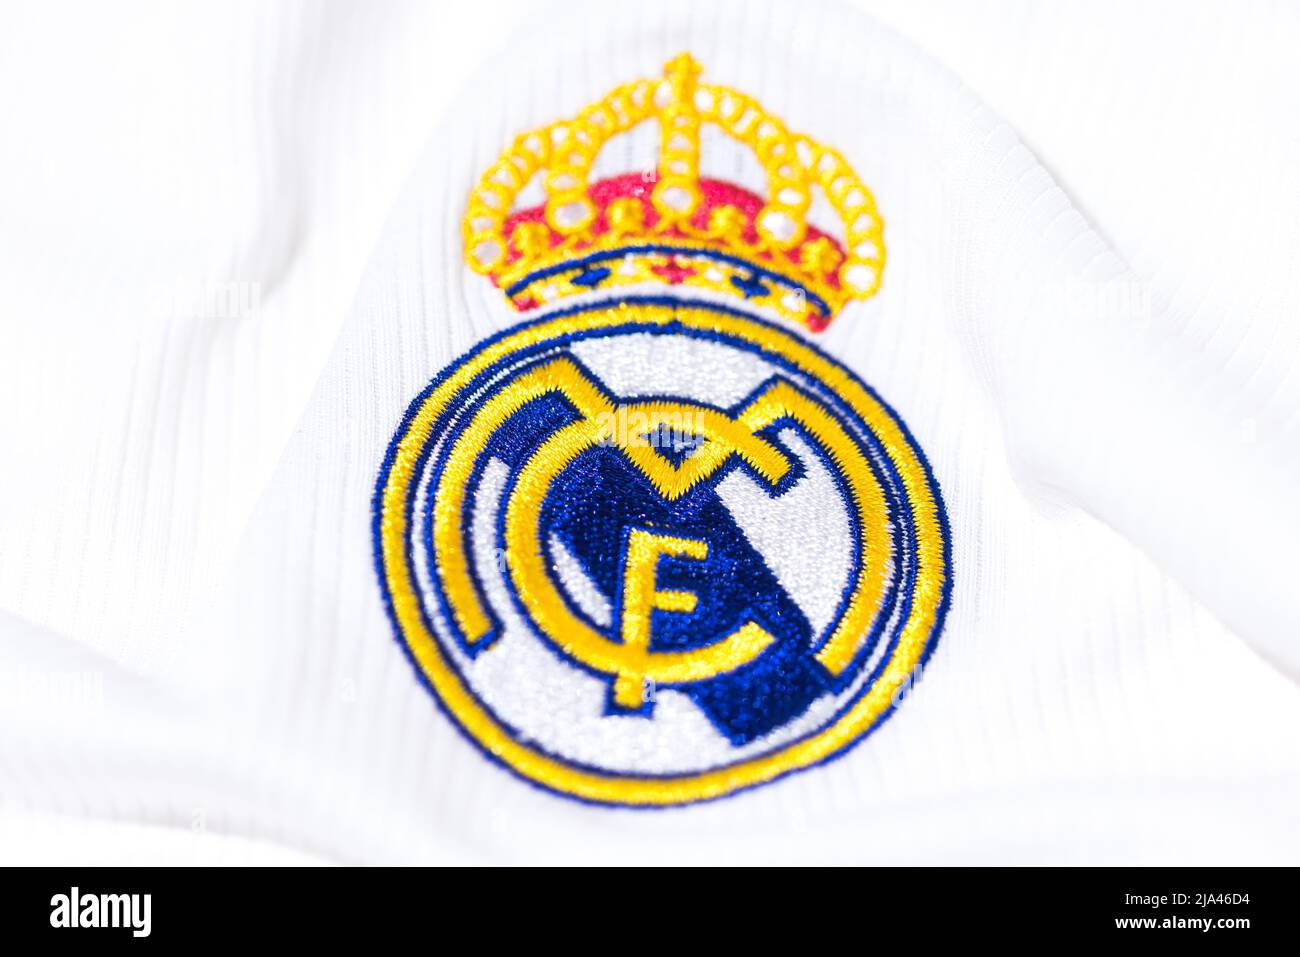 Proteggi la maglia bianca del Real Madrid Football Club. Campionato UEFA Champions League Final Concept on May 28, 2022, campione, europa, campionato, spagna. Foto Stock